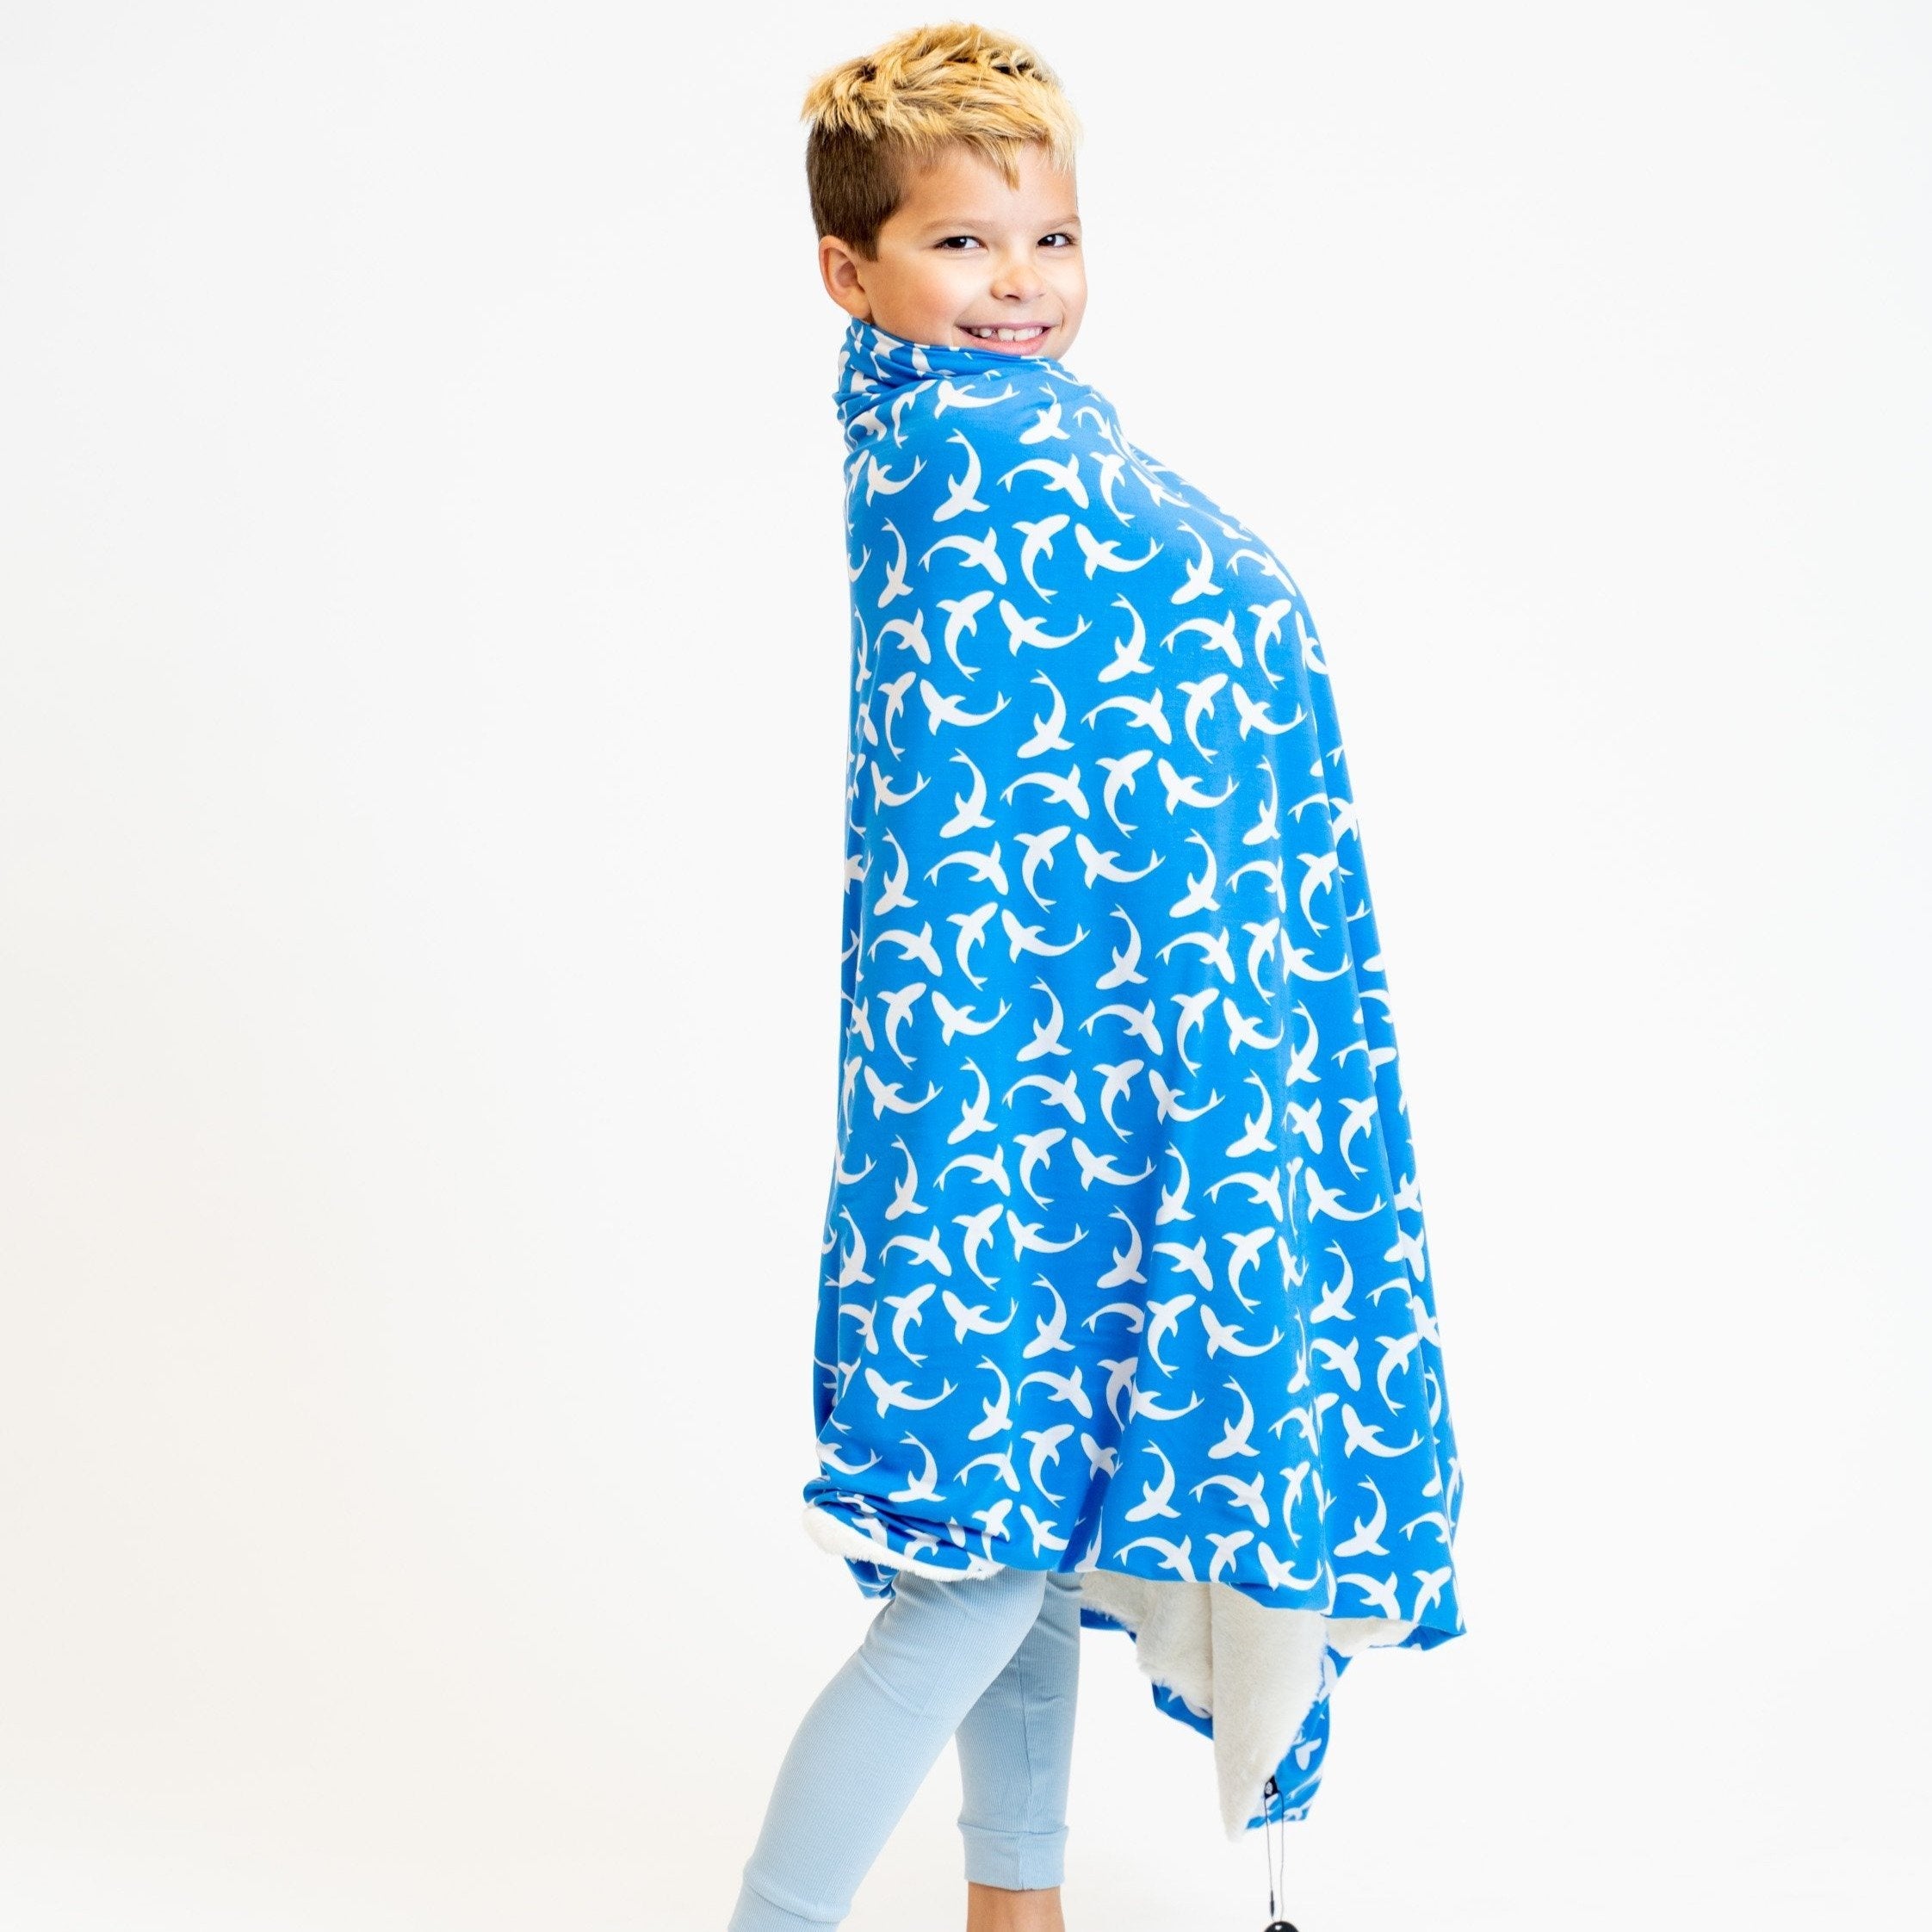 Big Kid Fur Blanket - 60 X 40 - Blue Sharks